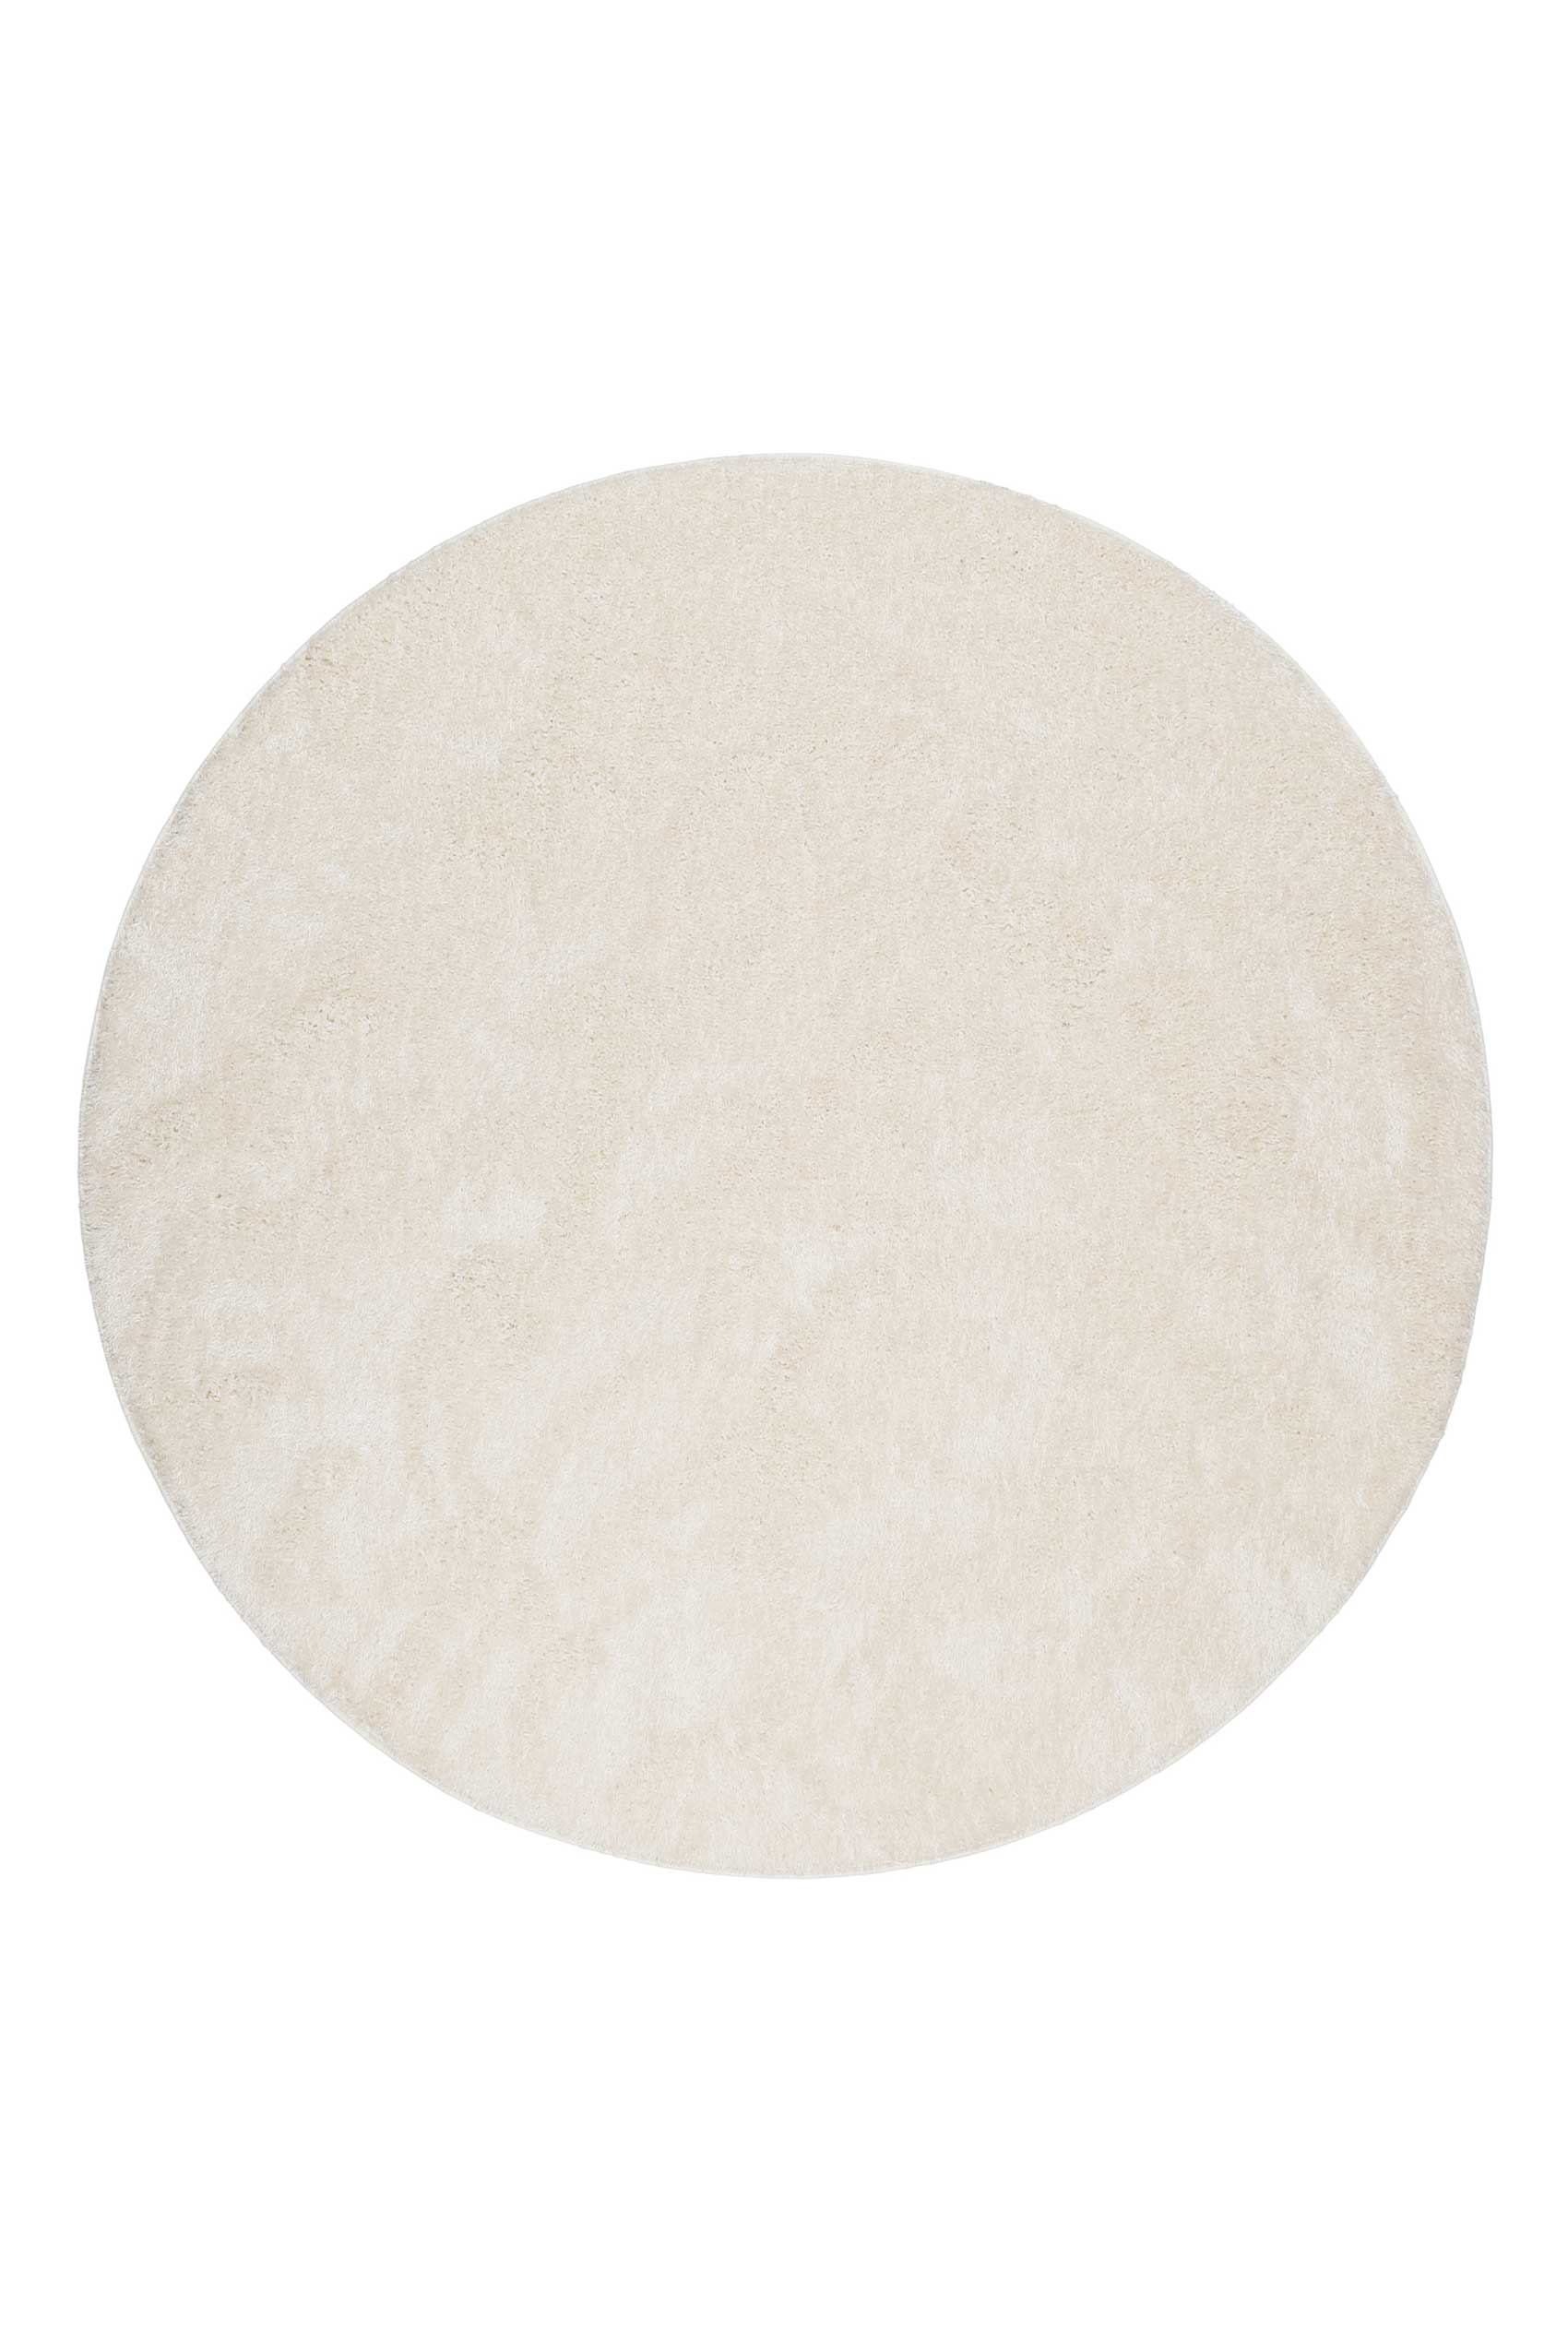 Teppich Rund Creme Weiß Hochflor » #Swagger Shag« Homie Living - Ansicht 1